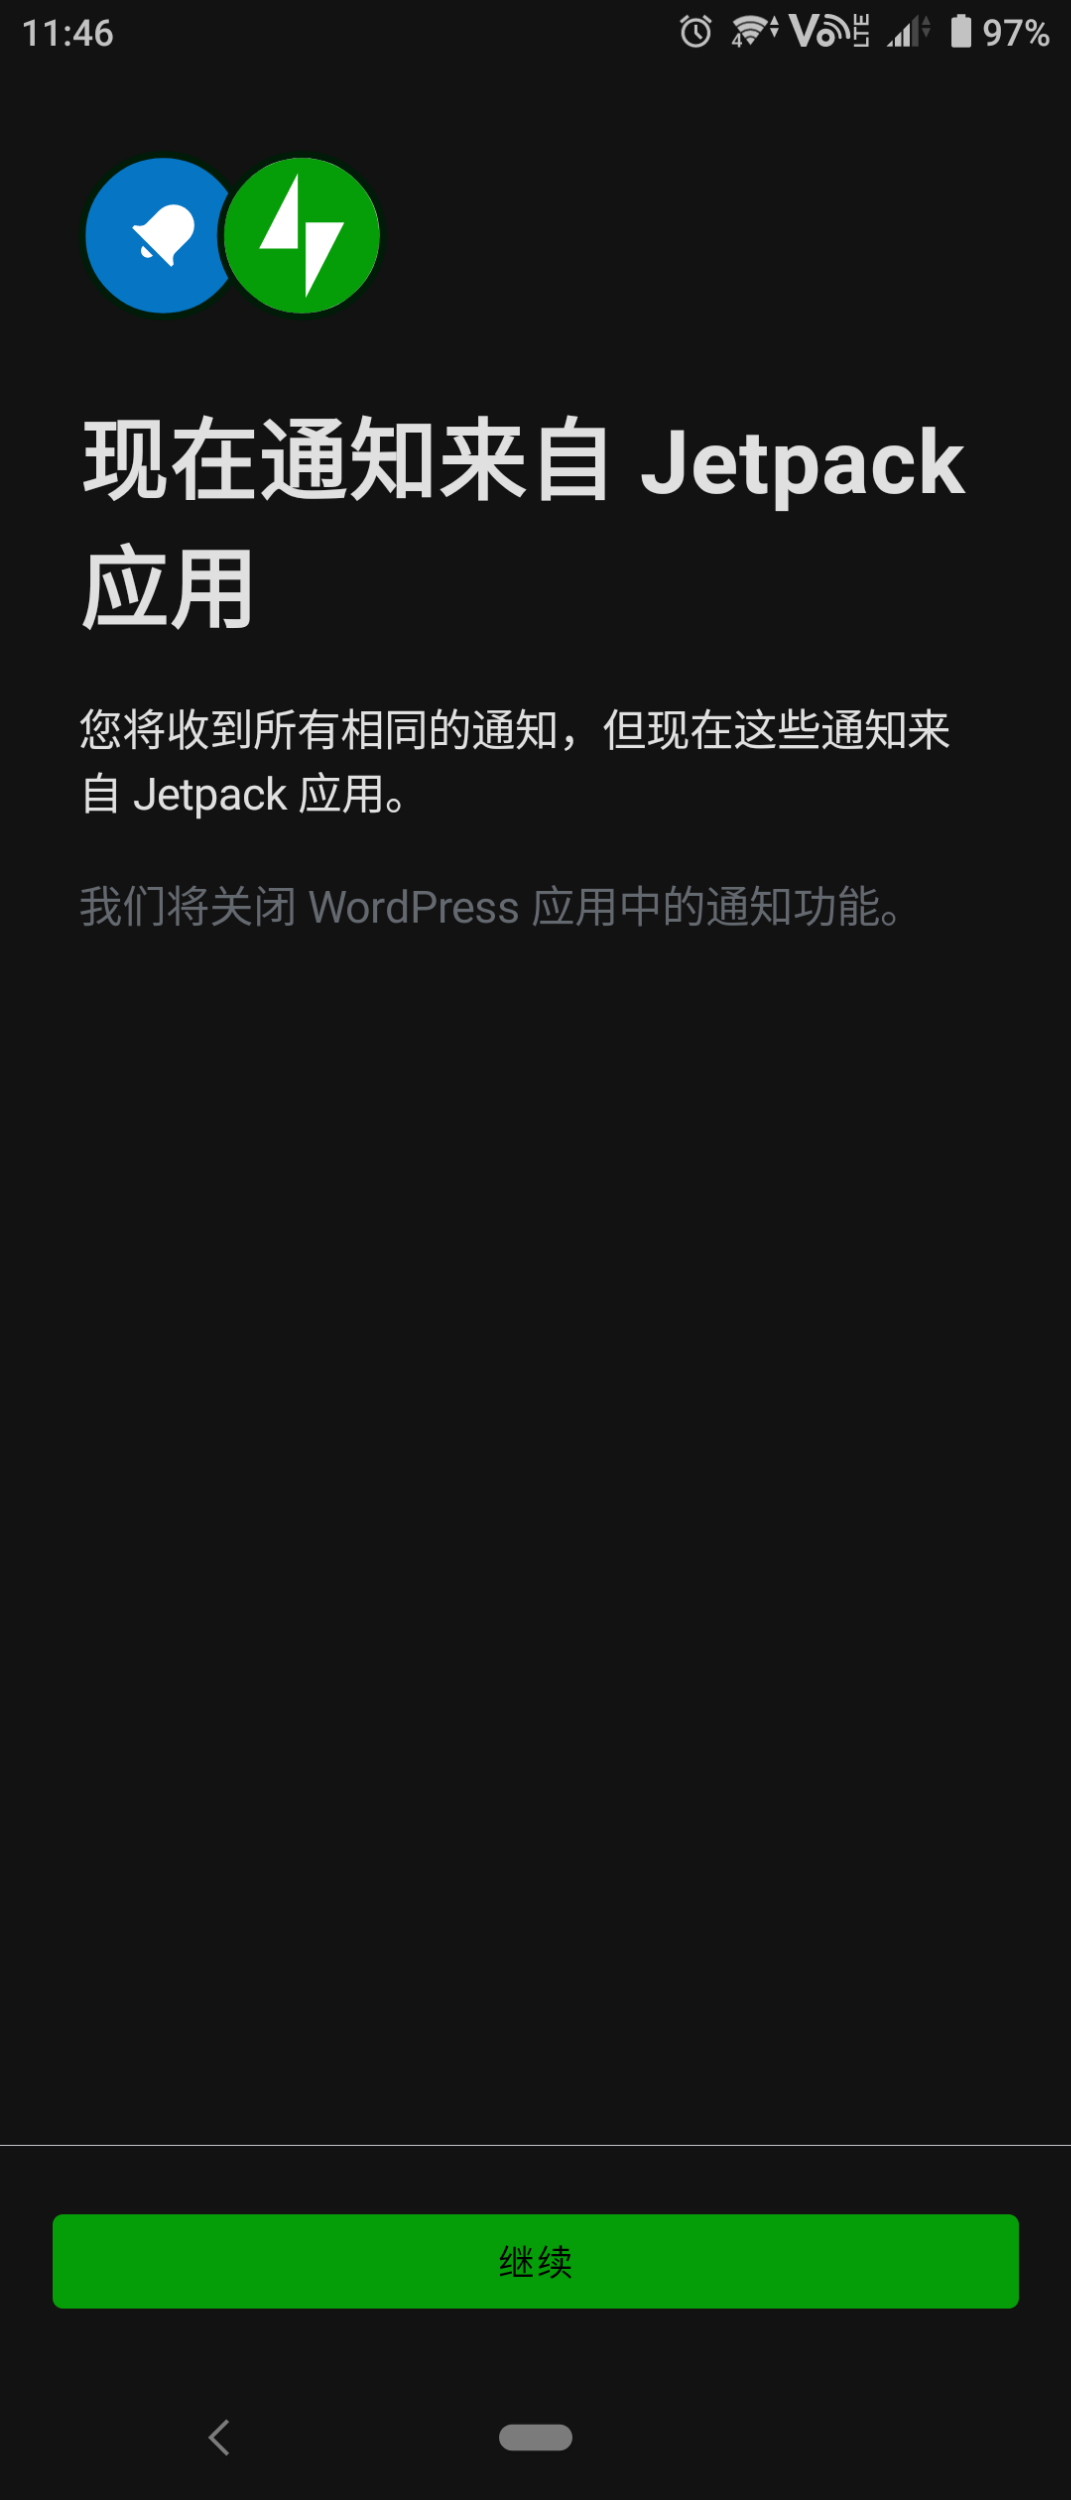 從 WordPress App 轉移至 Jetpack App - 即將完成轉移的說明